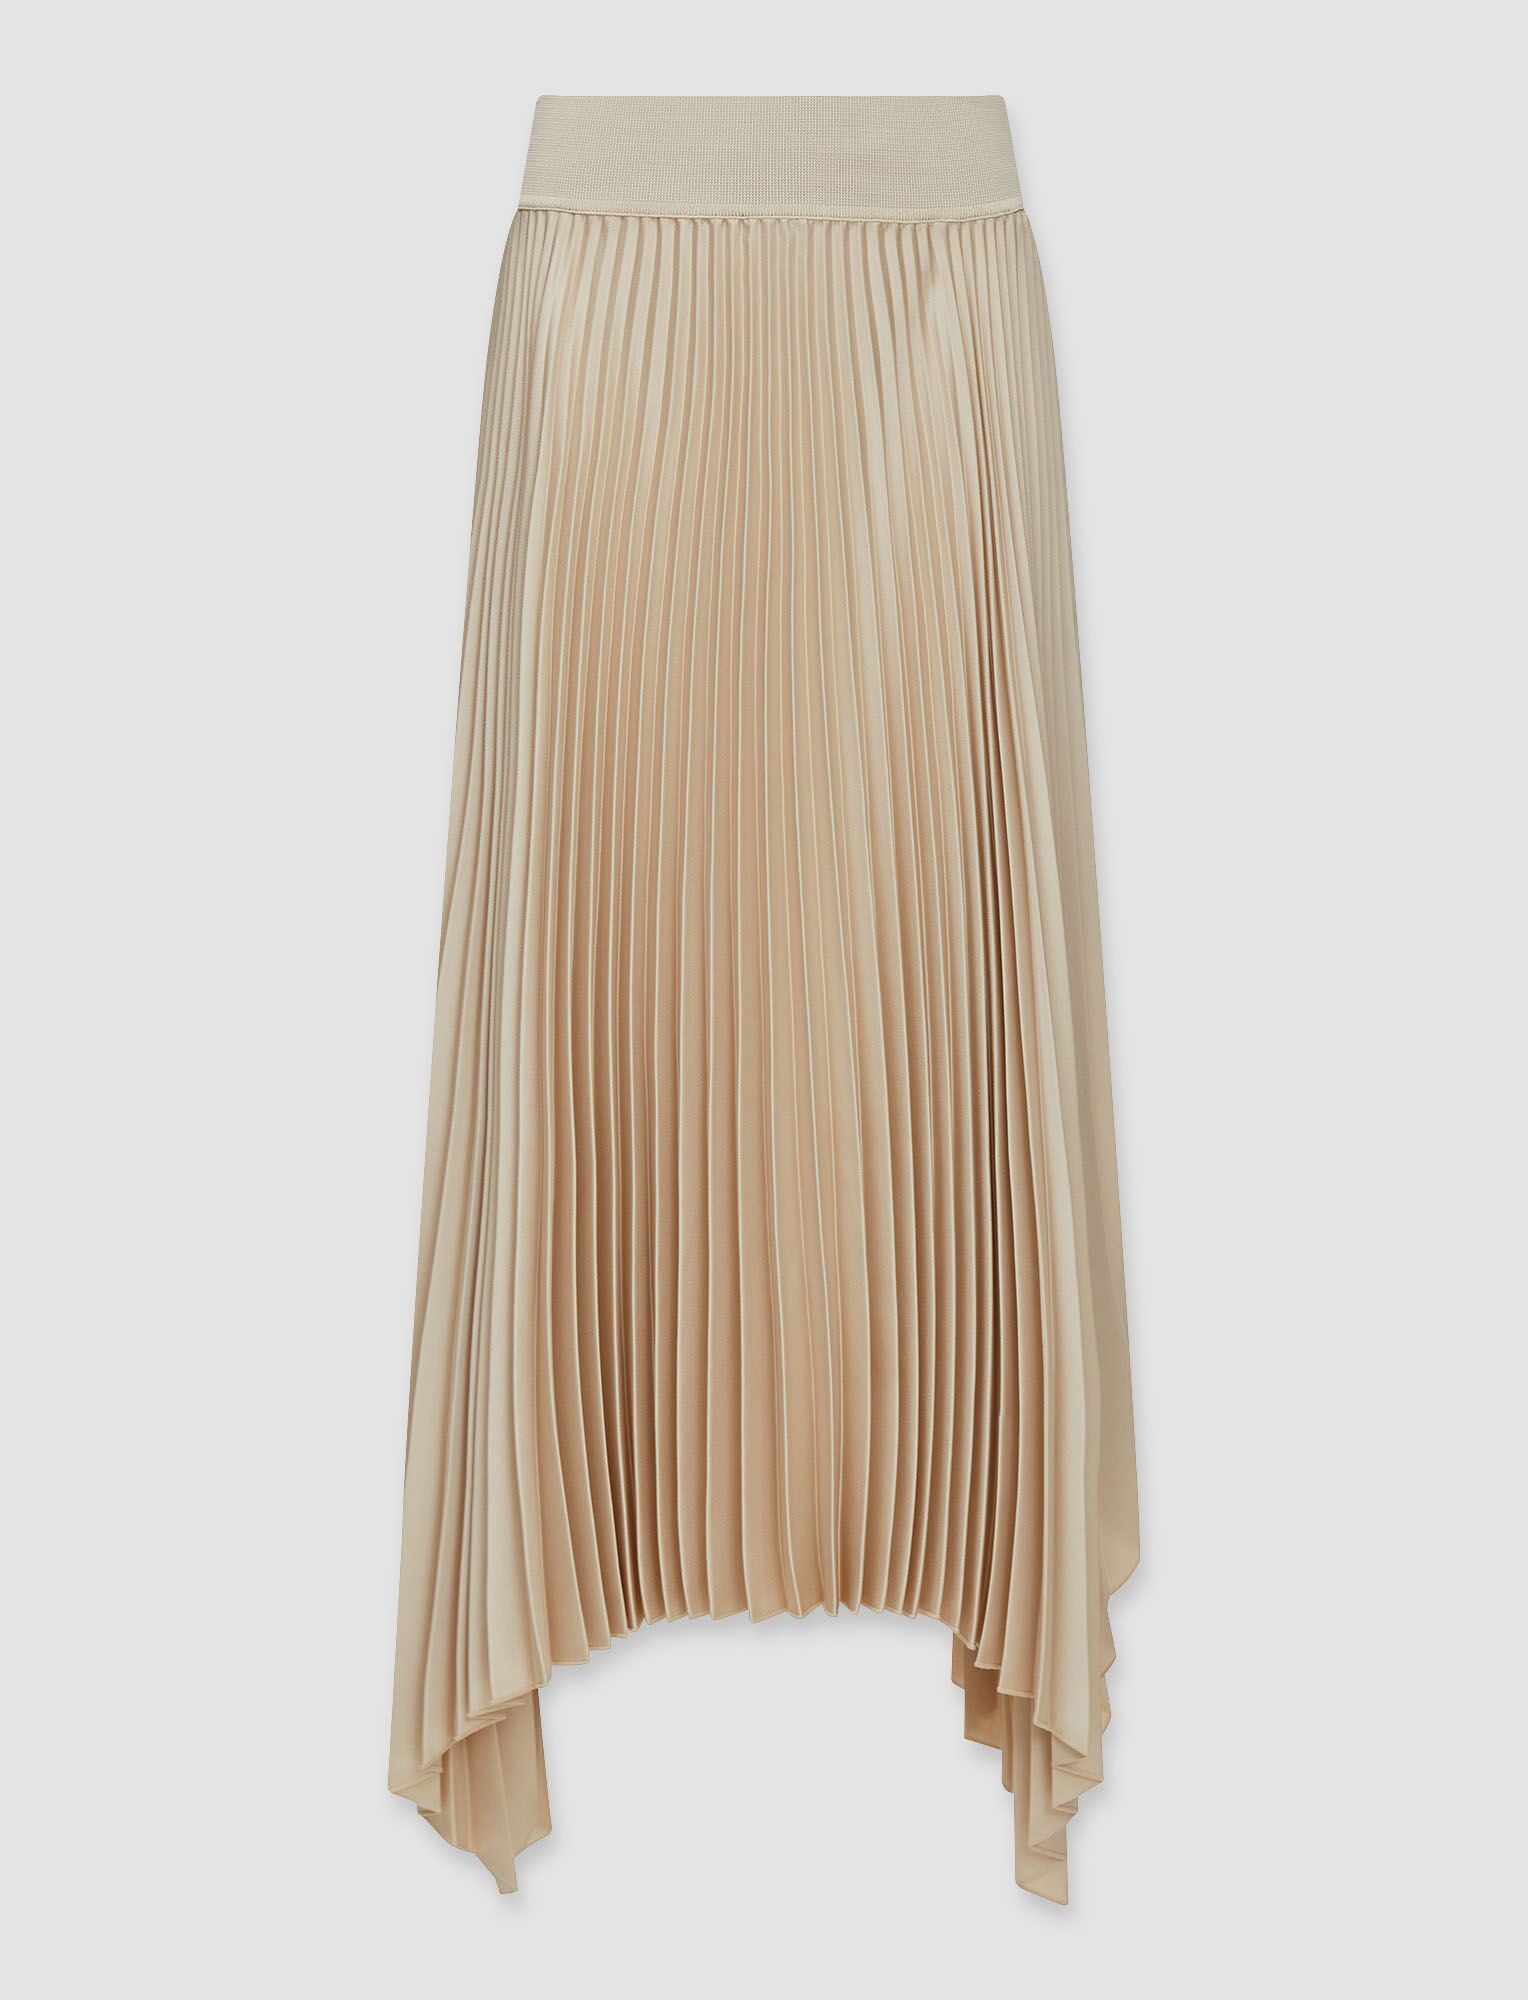 Joseph, Knit Weave Plisse Ade Skirt – Shorter Length, in Maplewood